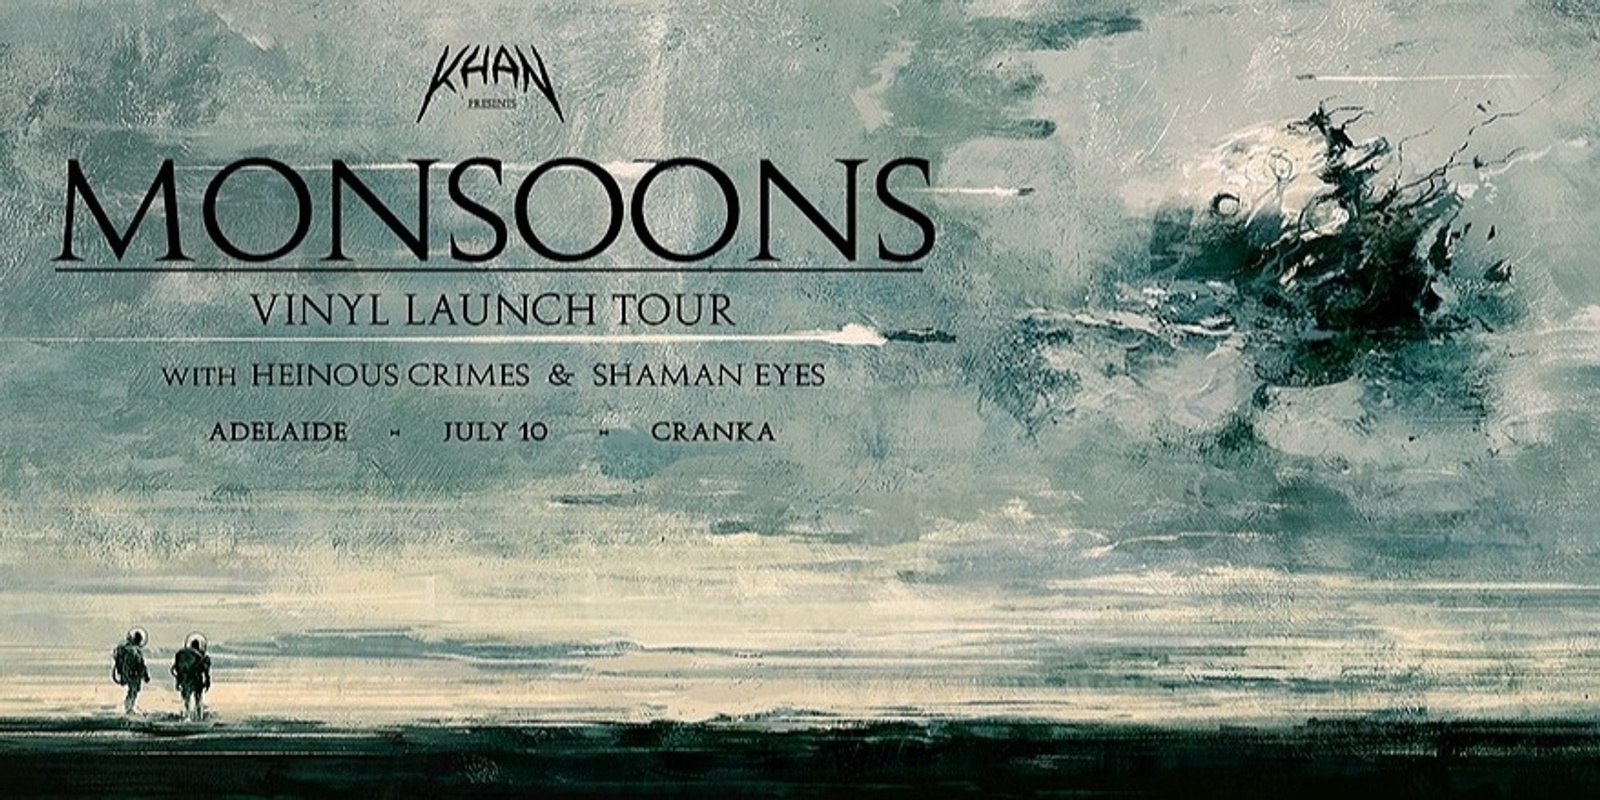 Banner image for Khan 'Monsoons' vinyl launch